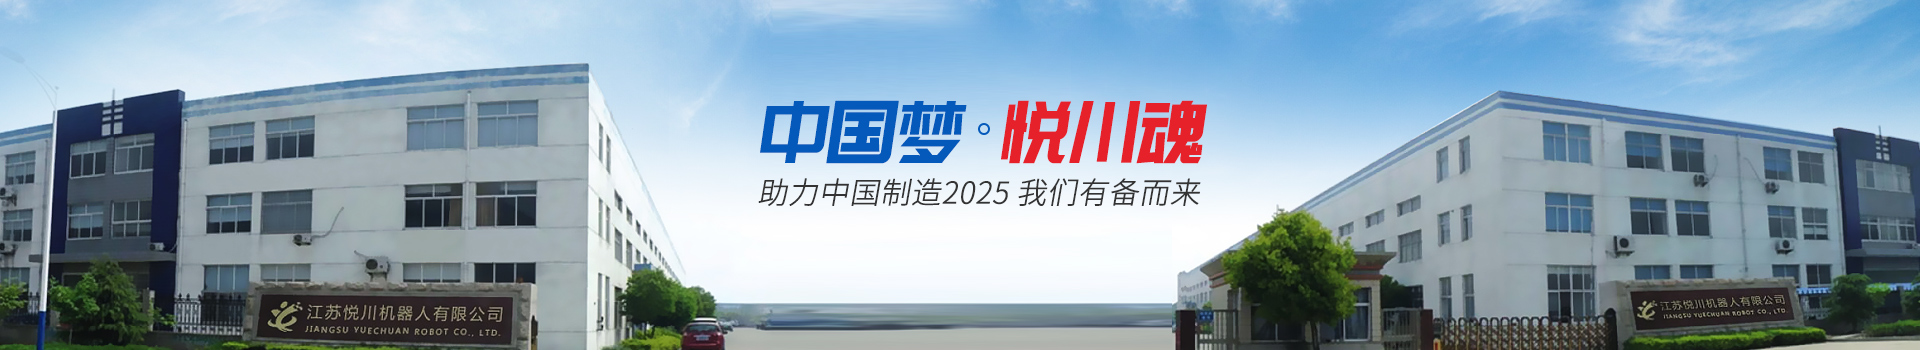 悦川机器人-助力中国制造2025 我们有备而来